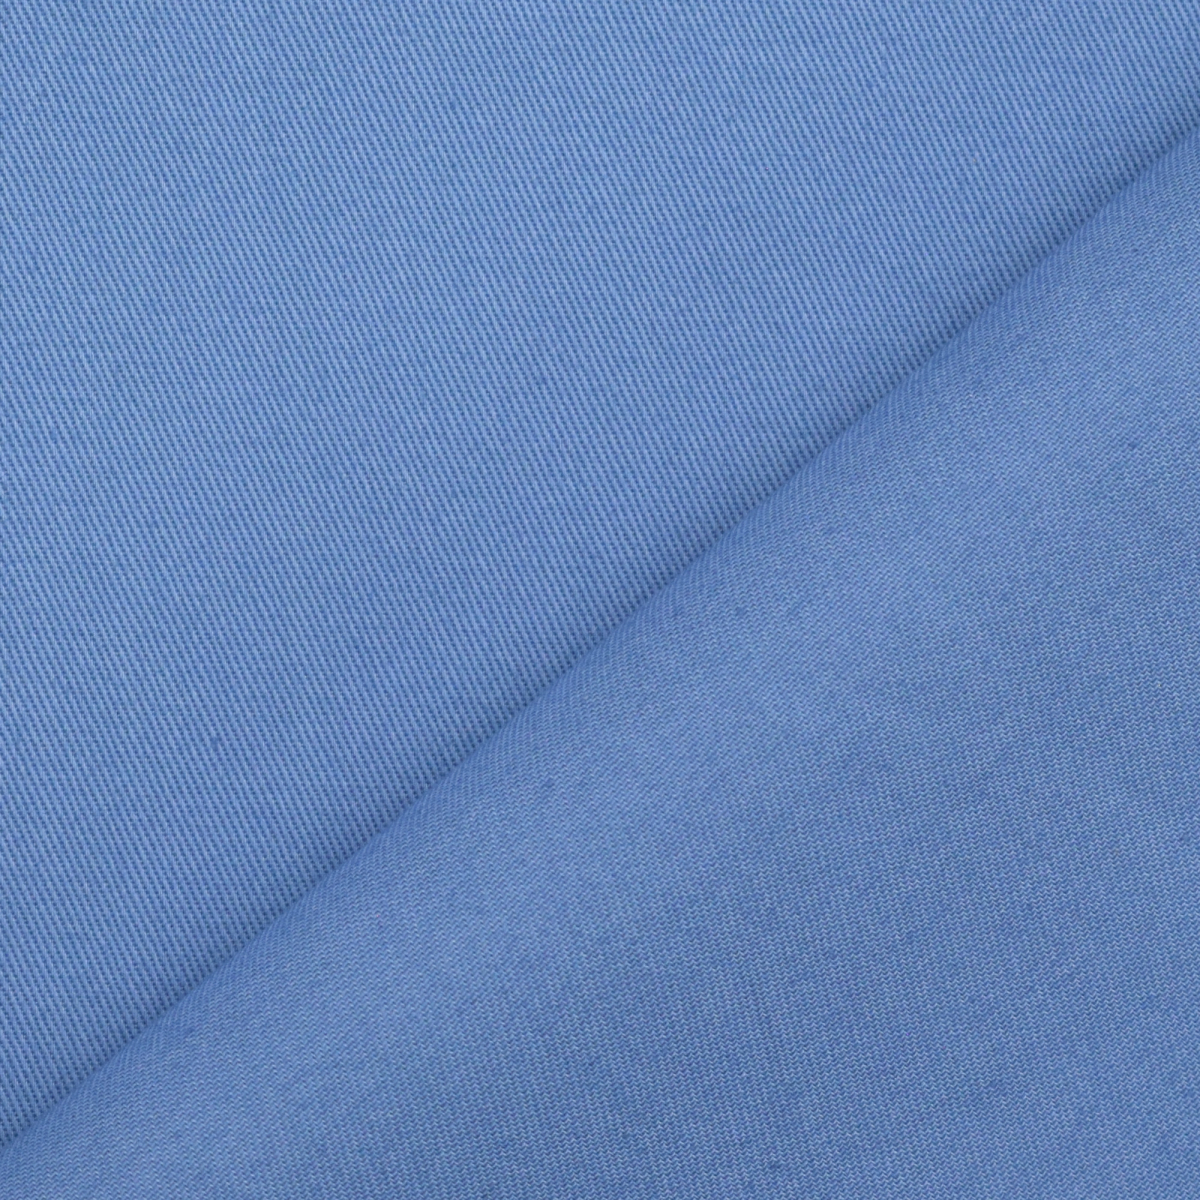 Cotton twill, cornflower blue